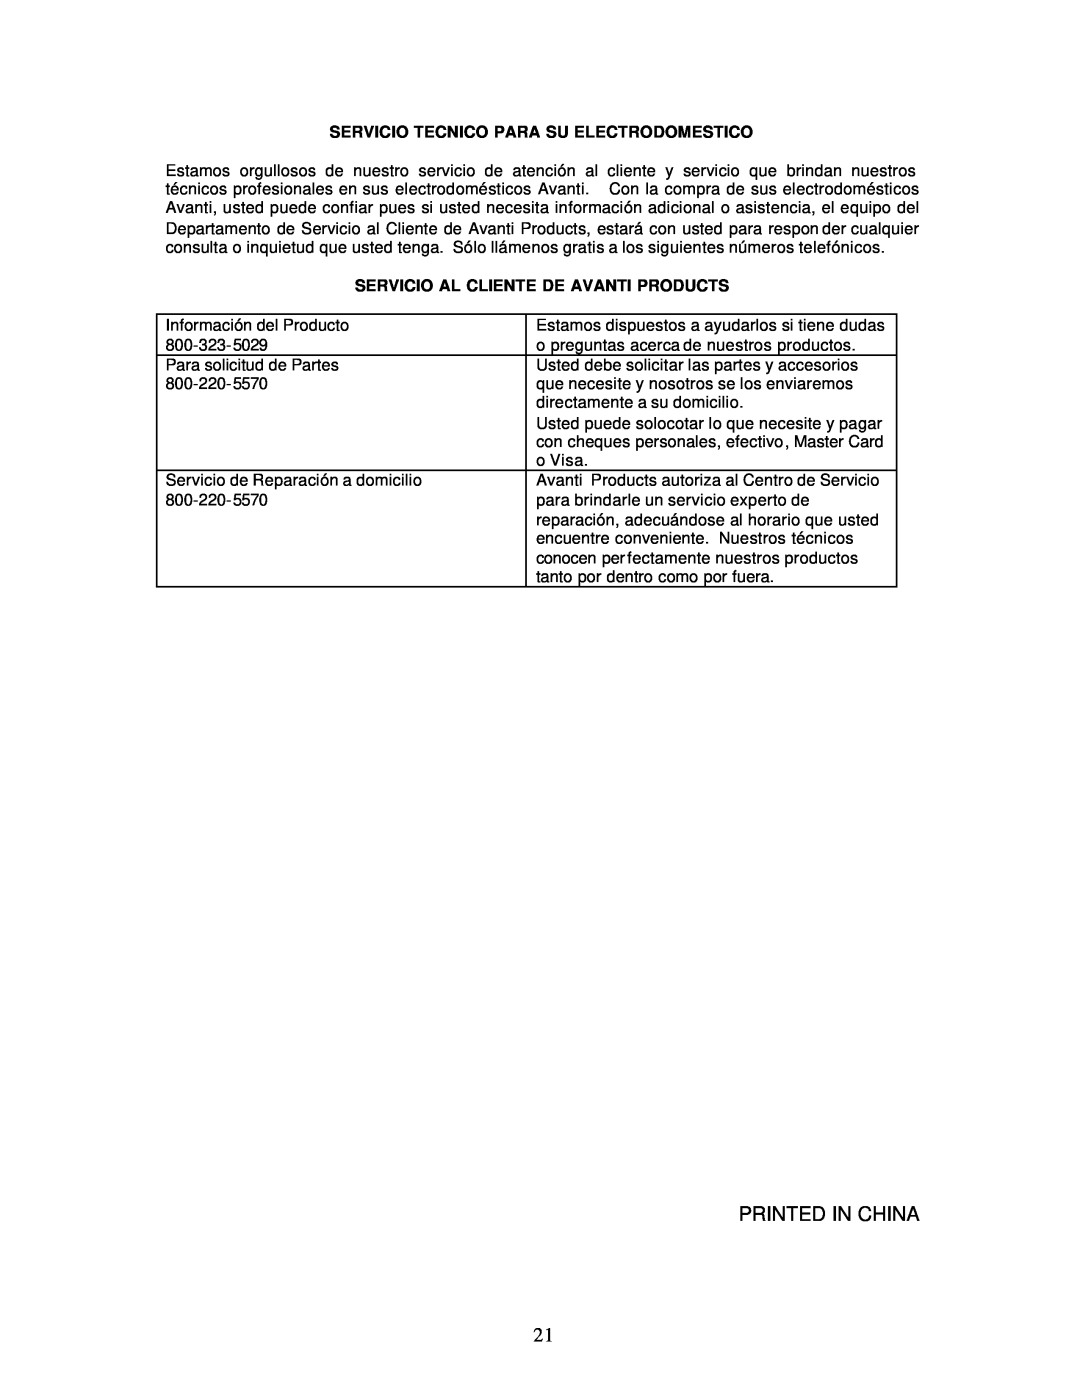 Avanti CF61 instruction manual Servicio Tecnico Para Su Electrodomestico, Servicio Al Cliente De Avanti Products 